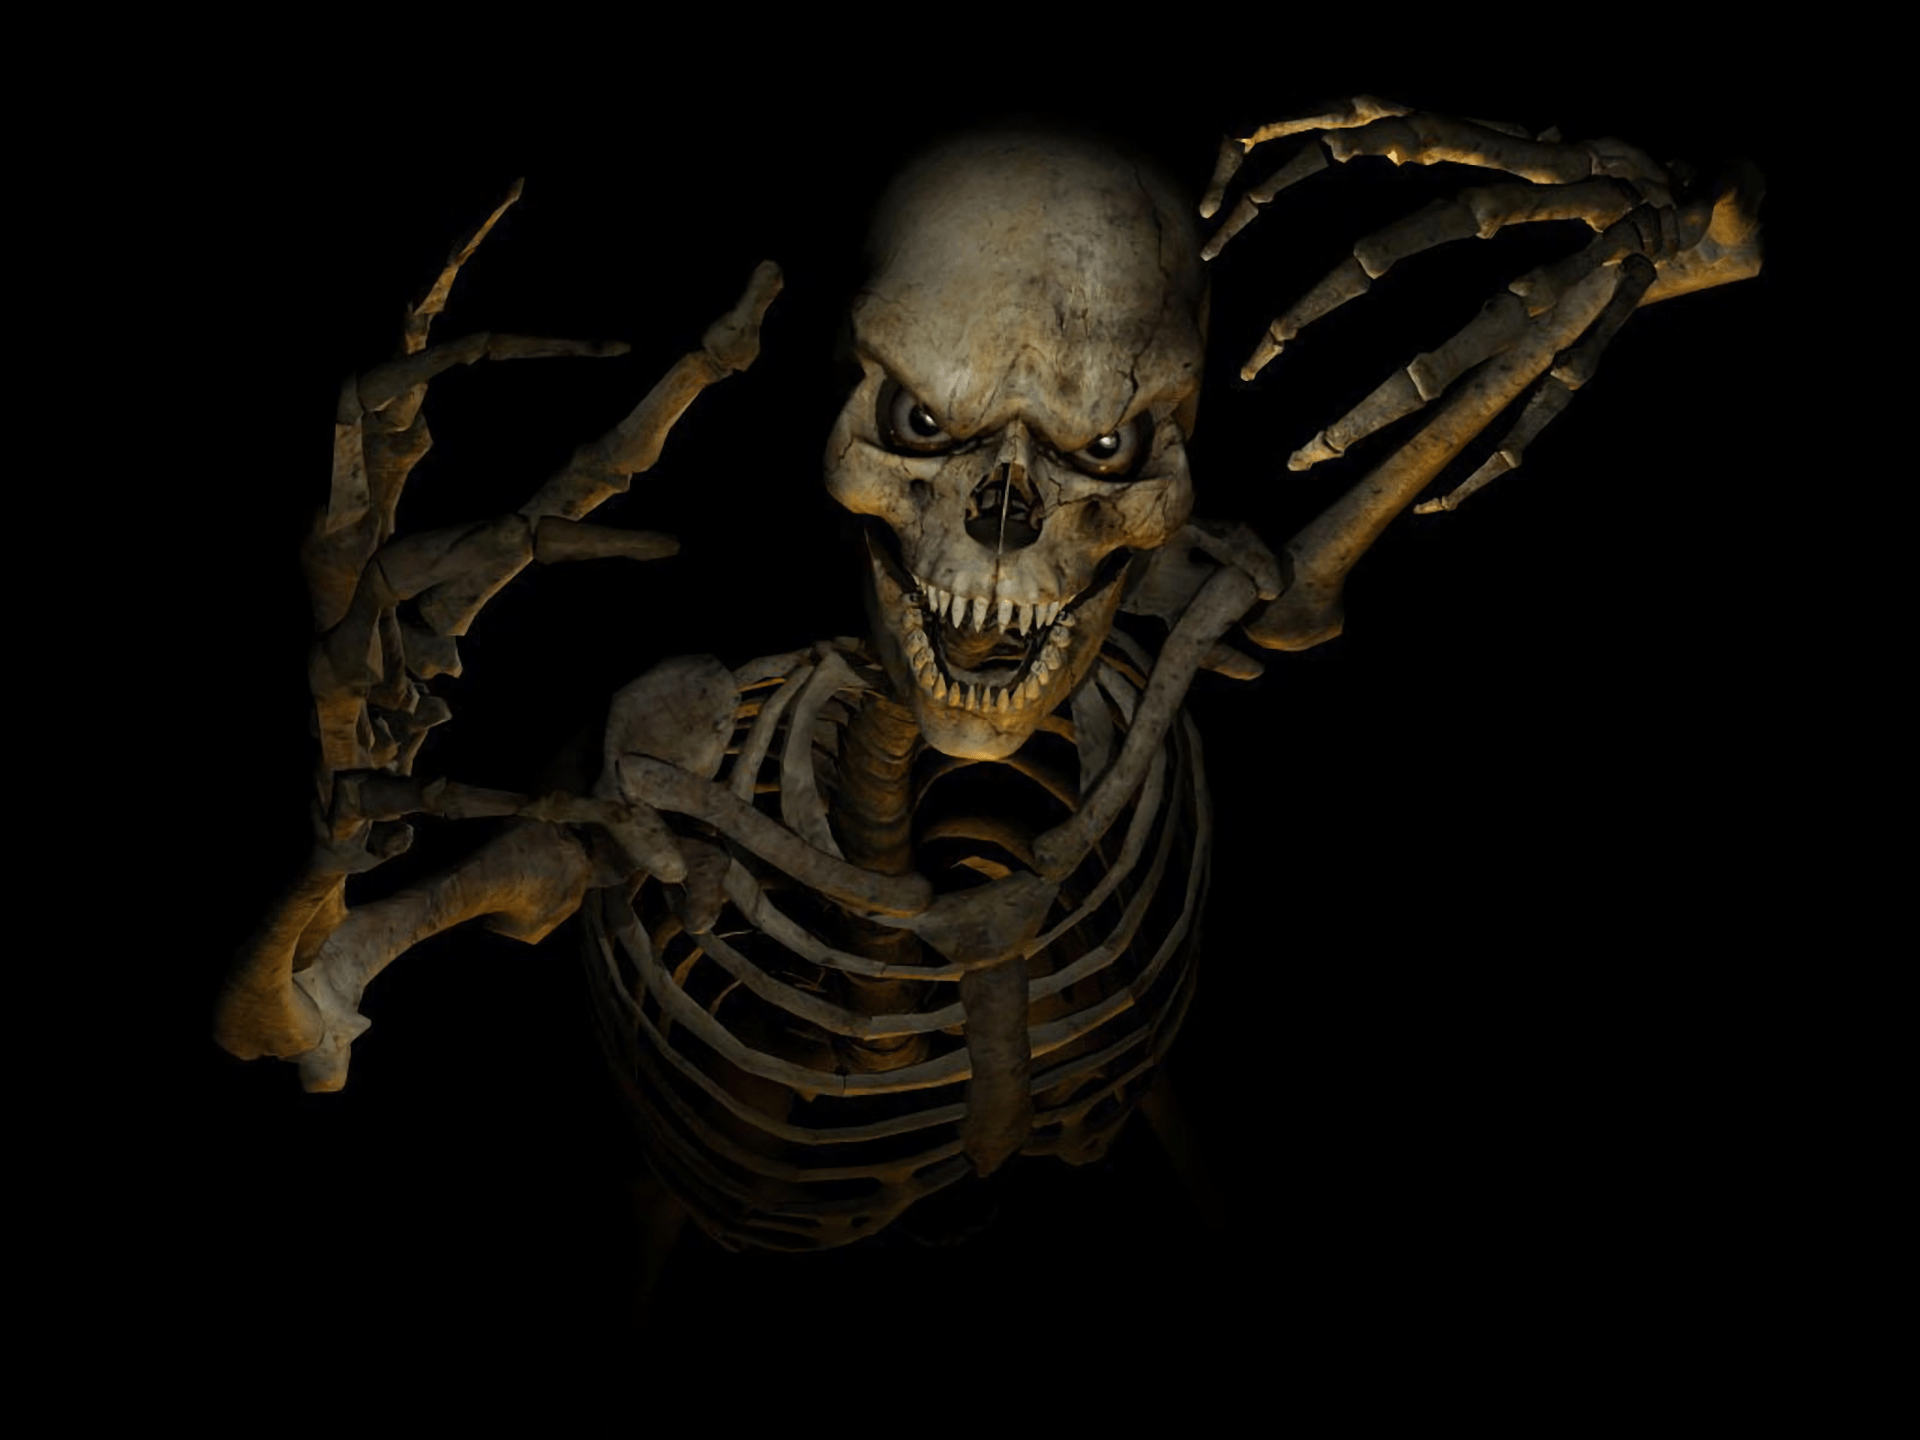 best Skull wallpaper HD image. HD skull